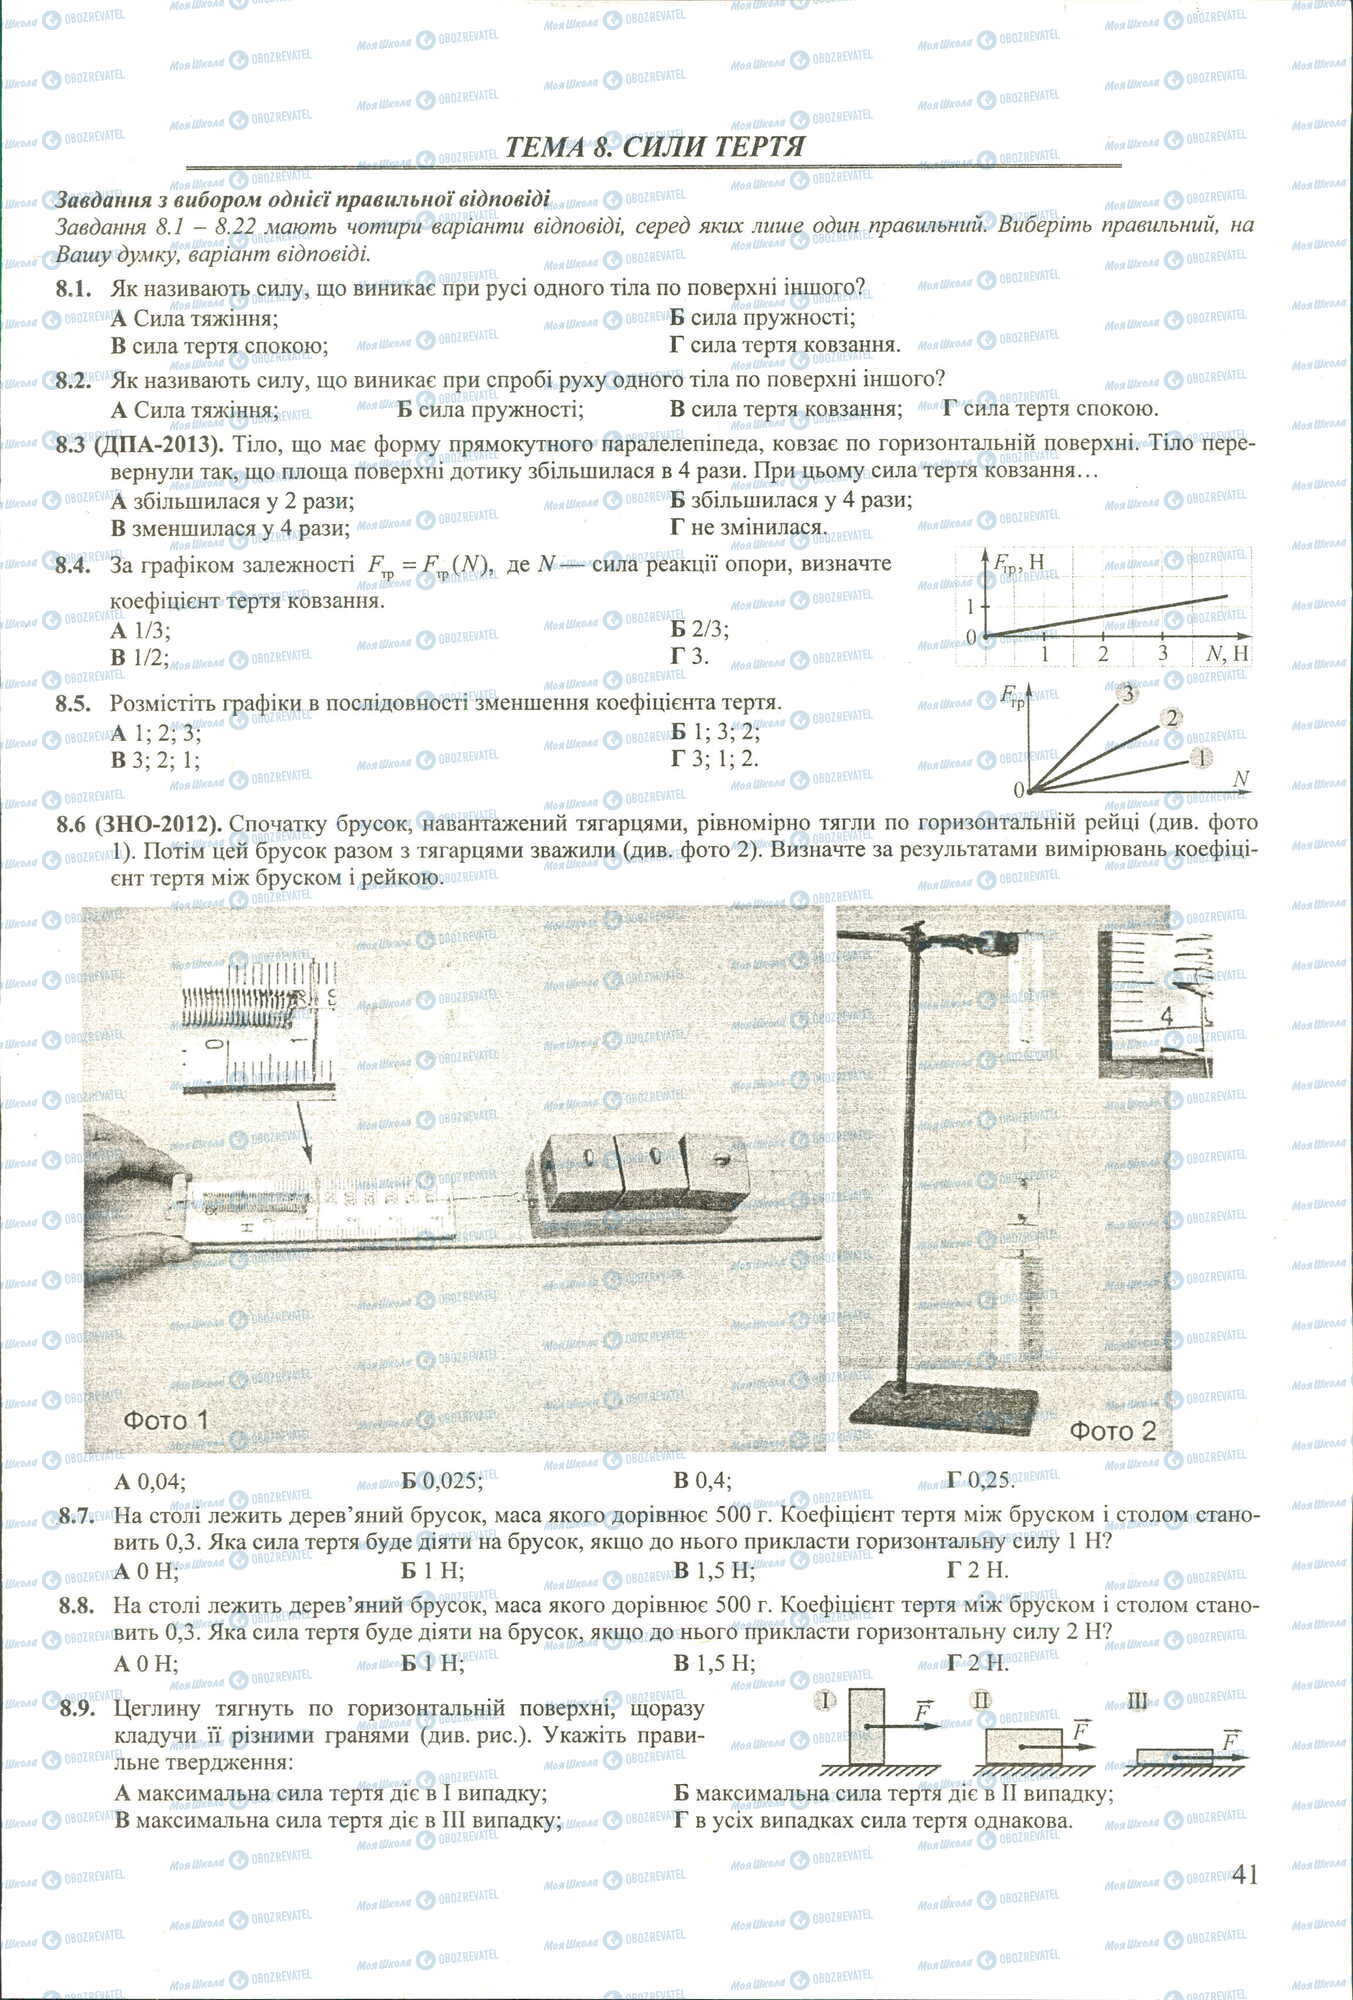 ЗНО Физика 11 класс страница 1-9